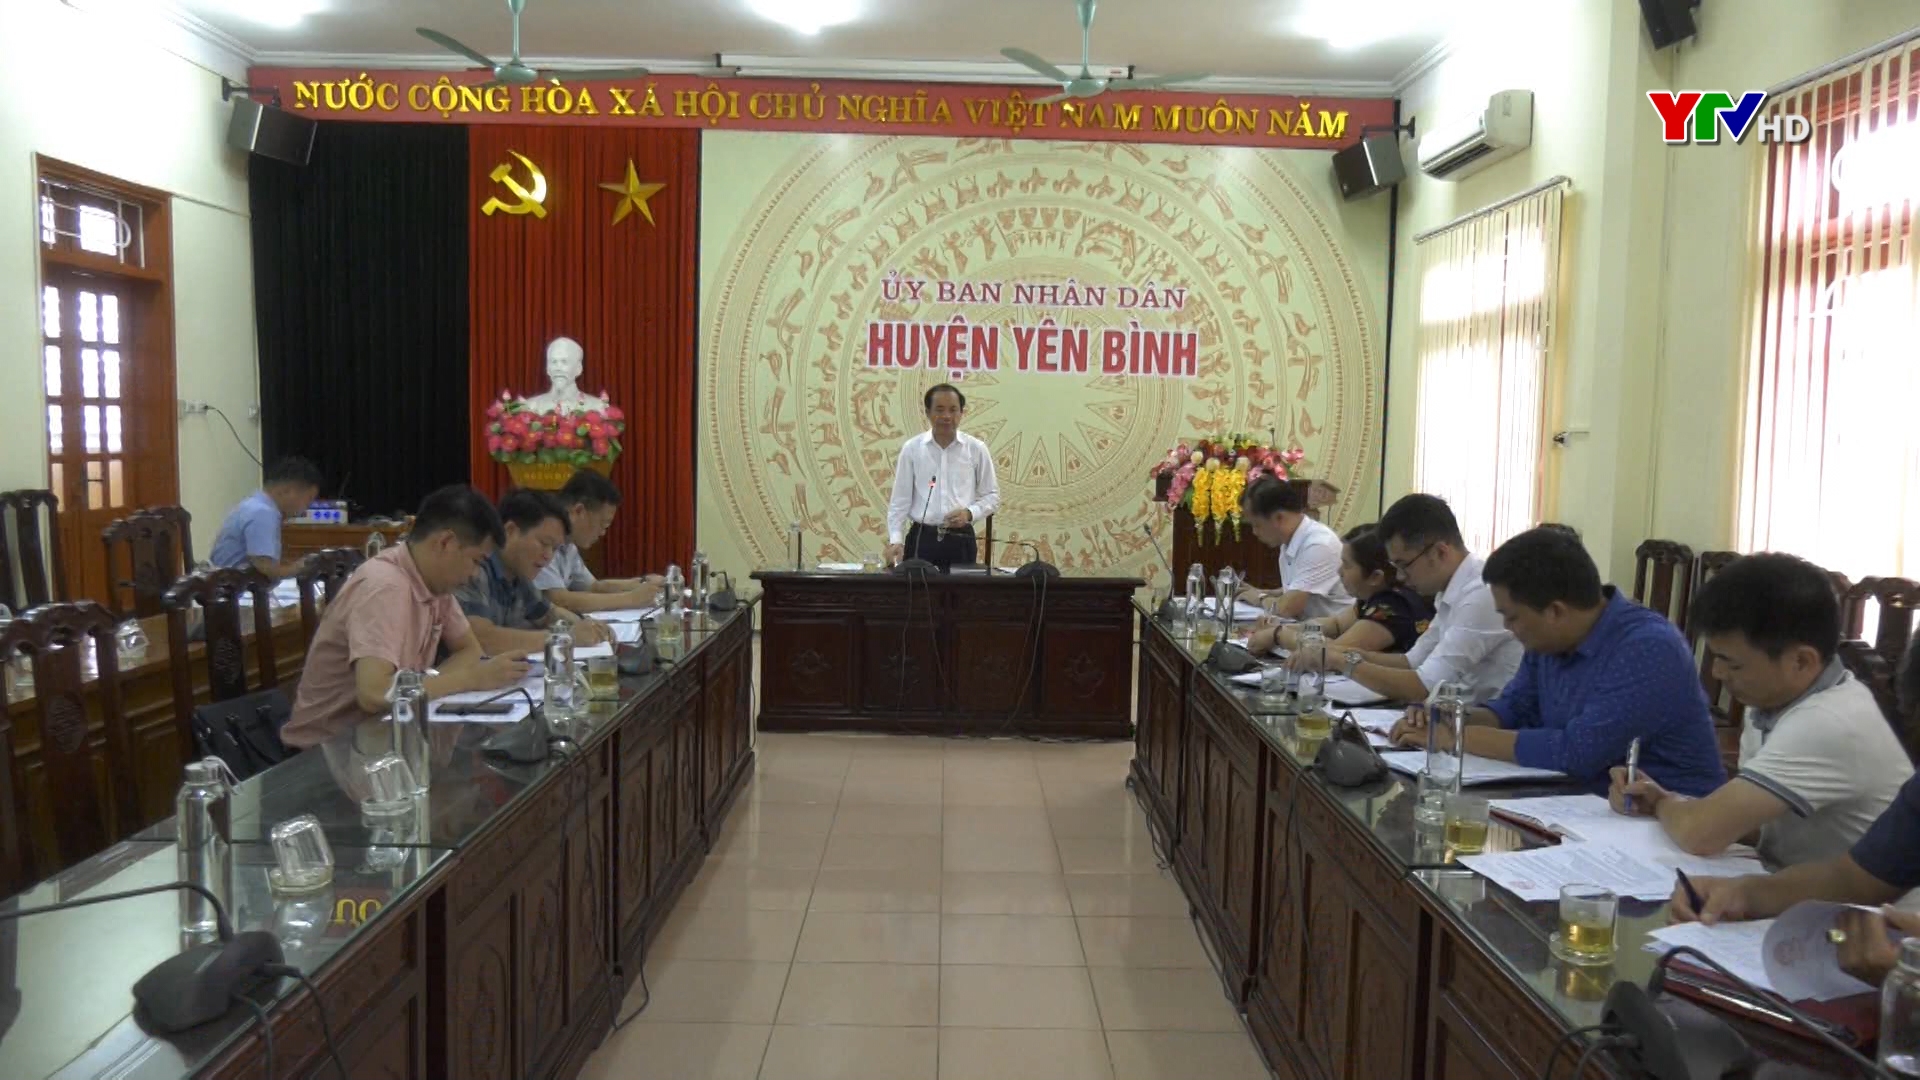 Đồng chí Tạ Văn Long - Phó Chủ tịch Thường trực UBND tỉnh làm việc với huyện Yên Bình